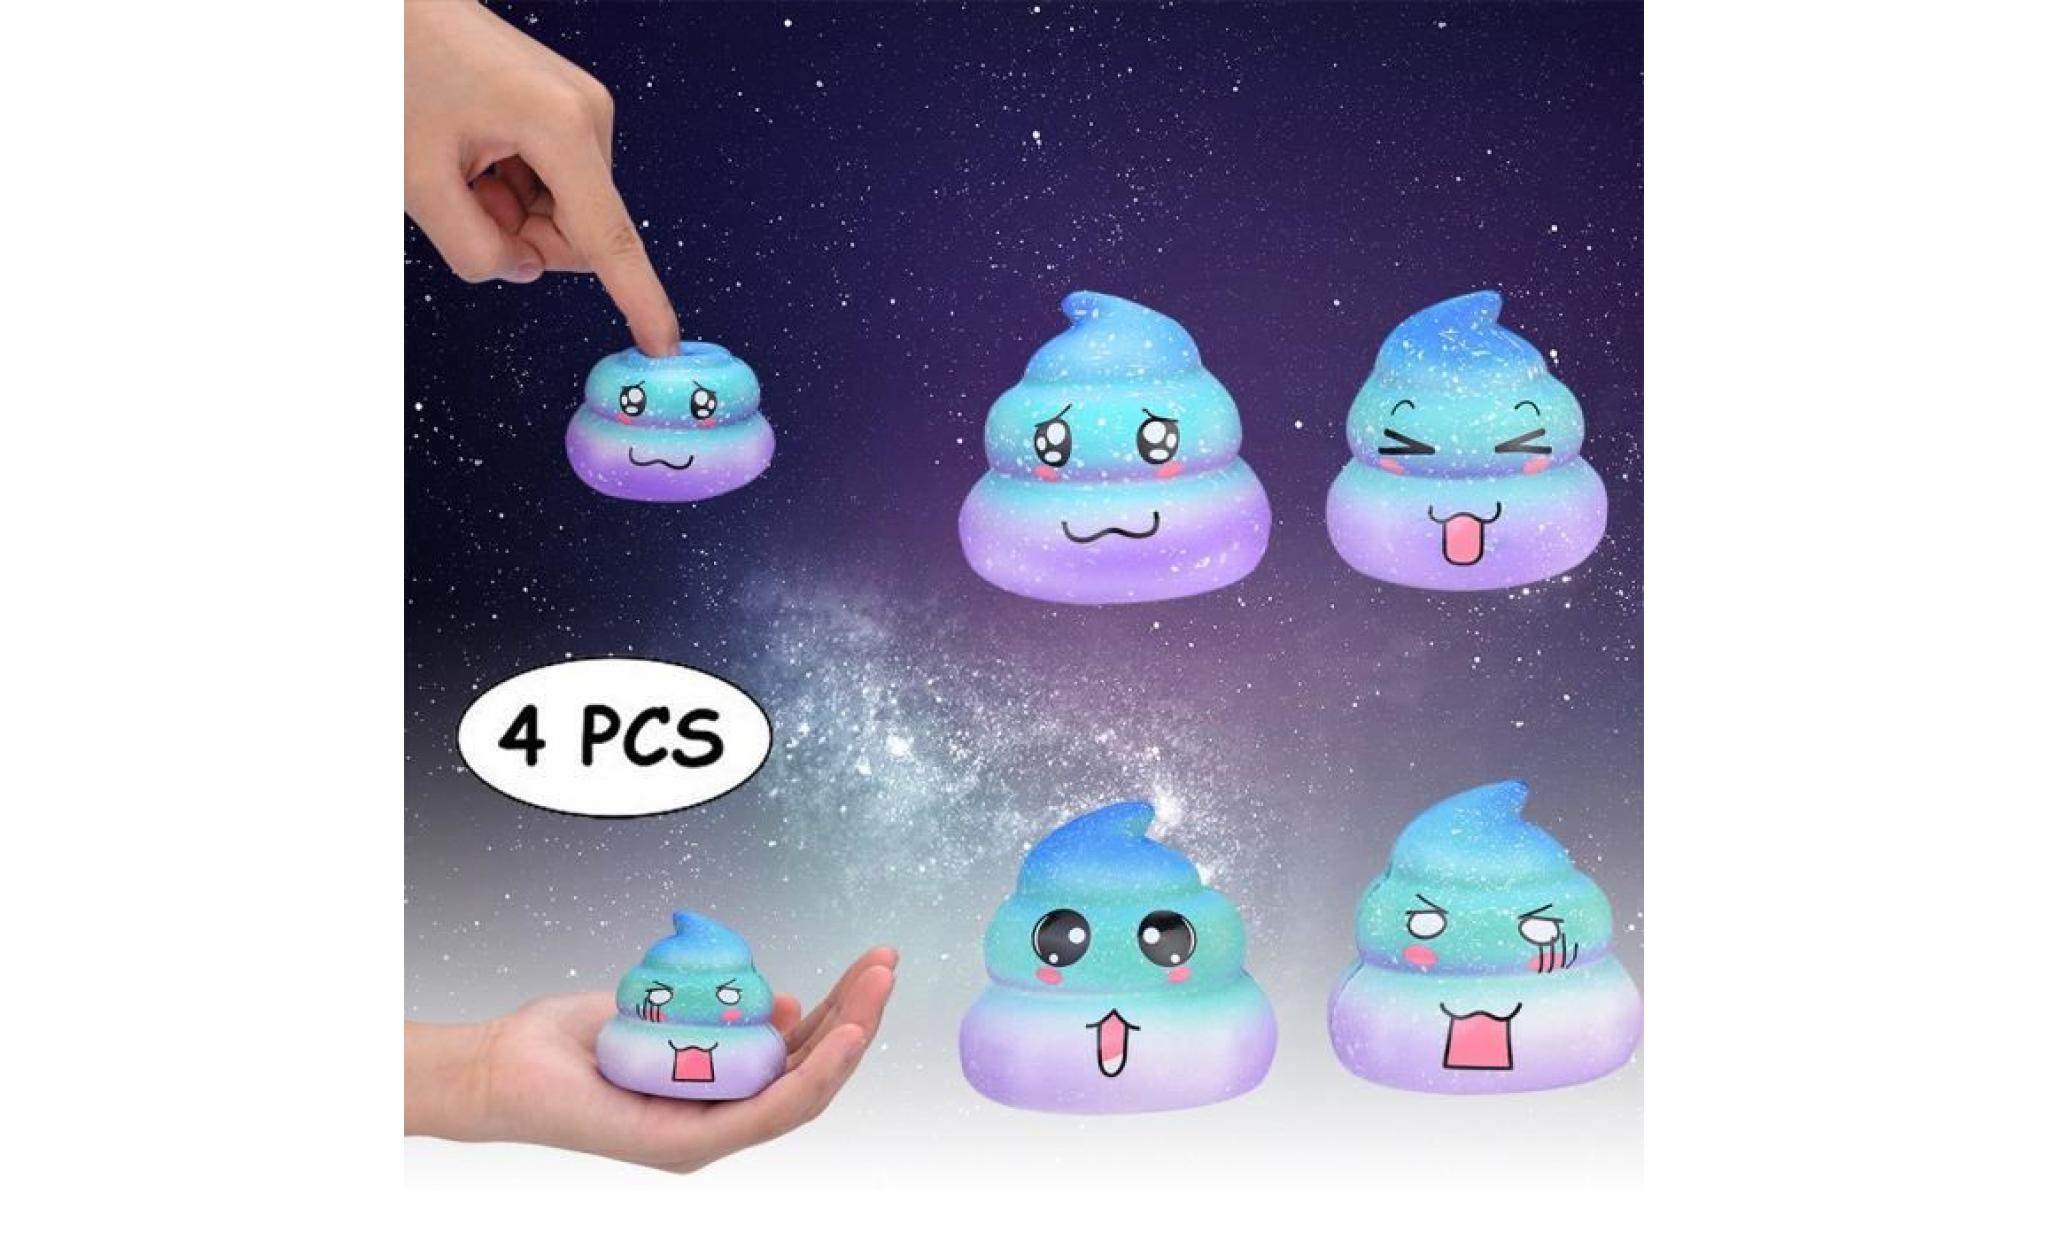 4pcs galaxy poo odeur agréable squishies jouets squeeze lente hausse du stress toys releveur zrj81025102_666